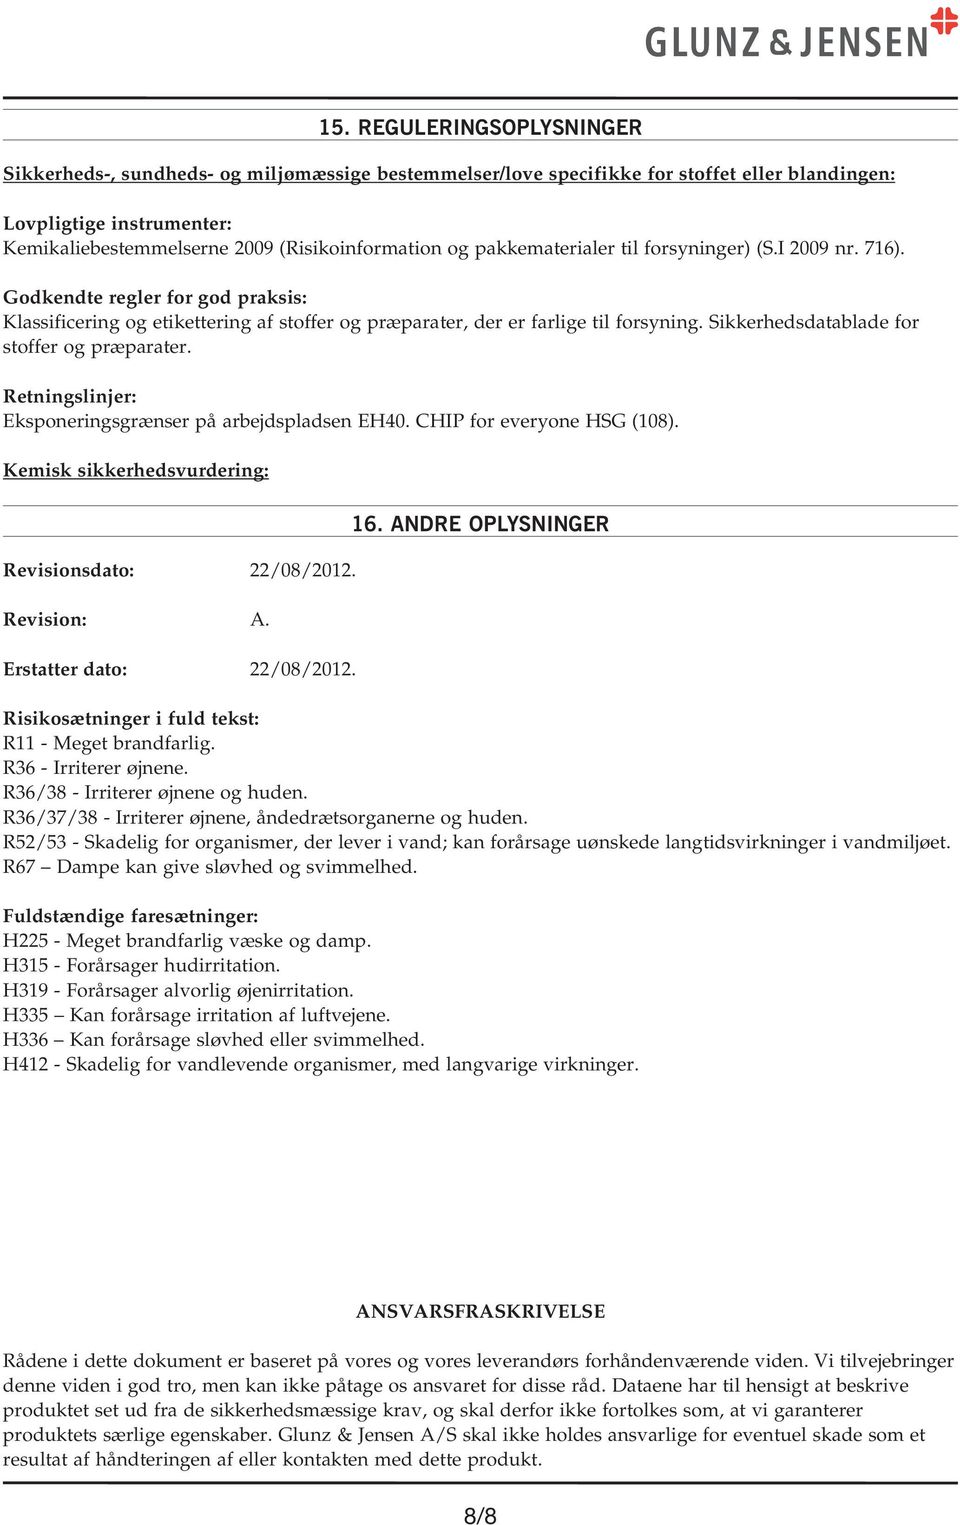 Sikkerhedsdatablade for stoffer og præparater. Retningslinjer: Eksponeringsgrænser på arbejdspladsen EH40. CHIP for everyone HSG (108). Kemisk sikkerhedsvurdering: Revisionsdato: 22/08/2012.